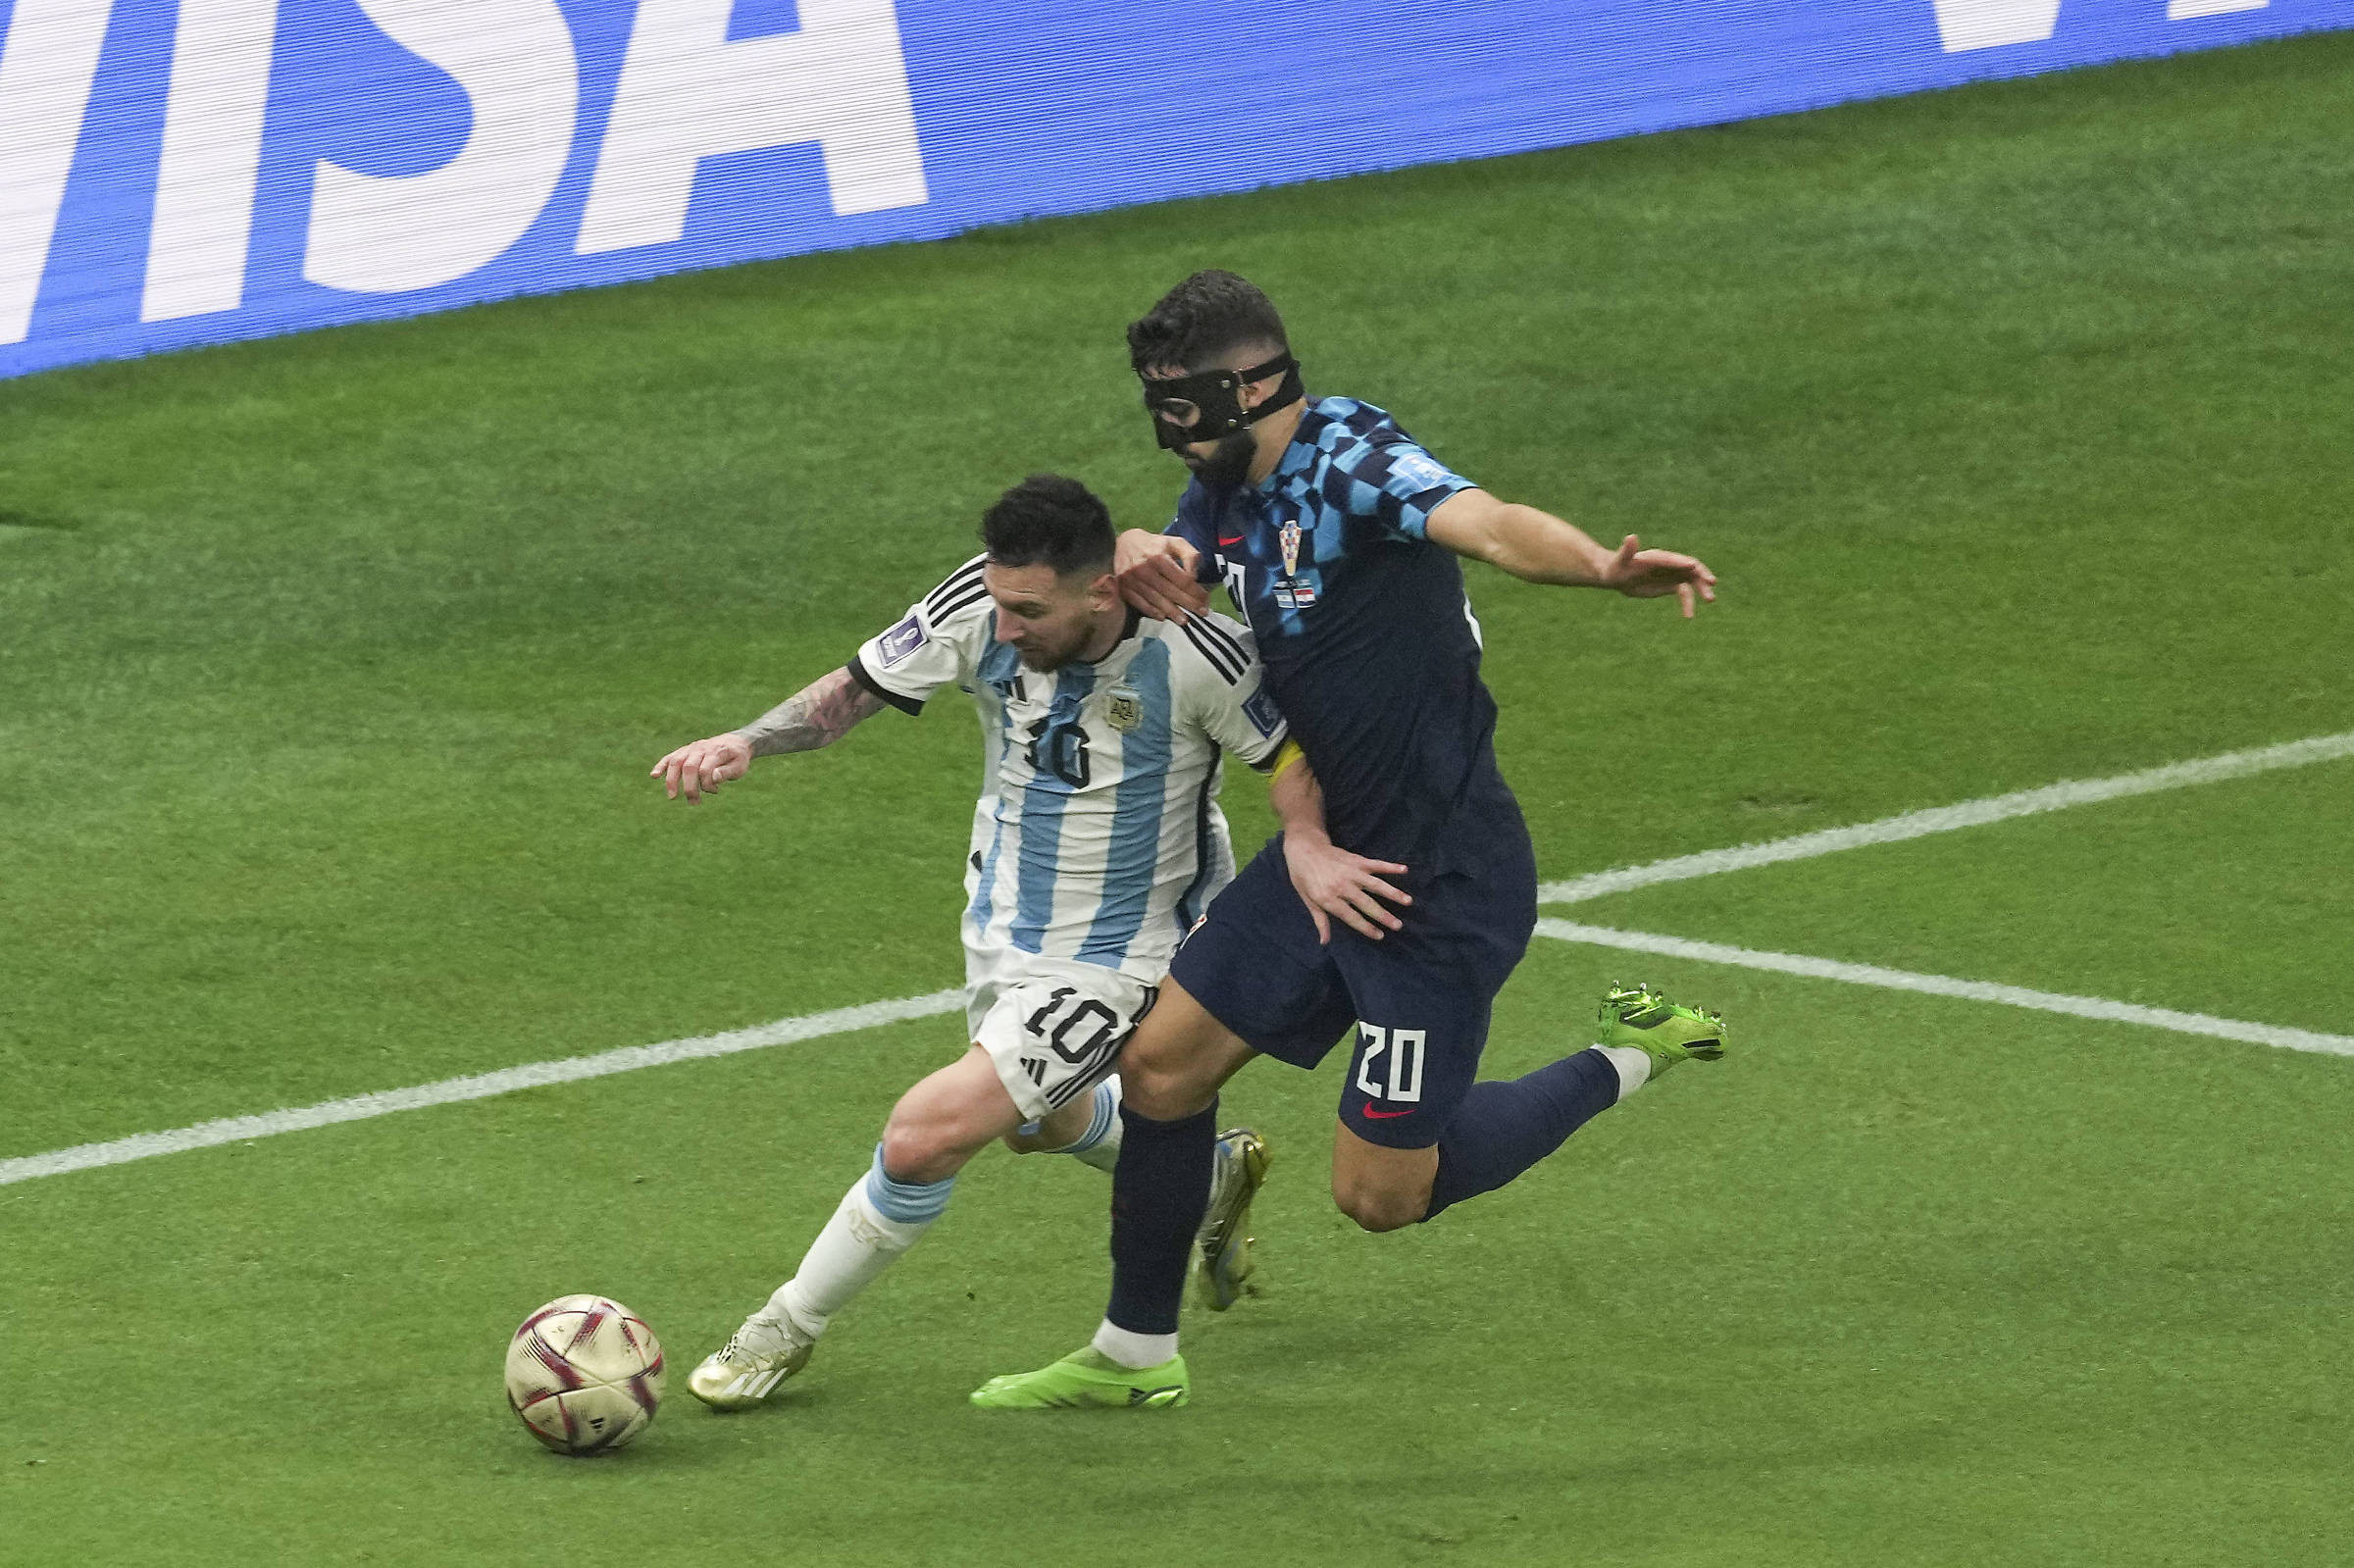 Ver reacciones de prensa al Messi vs Croacia – 13/12/2022 – Deporte